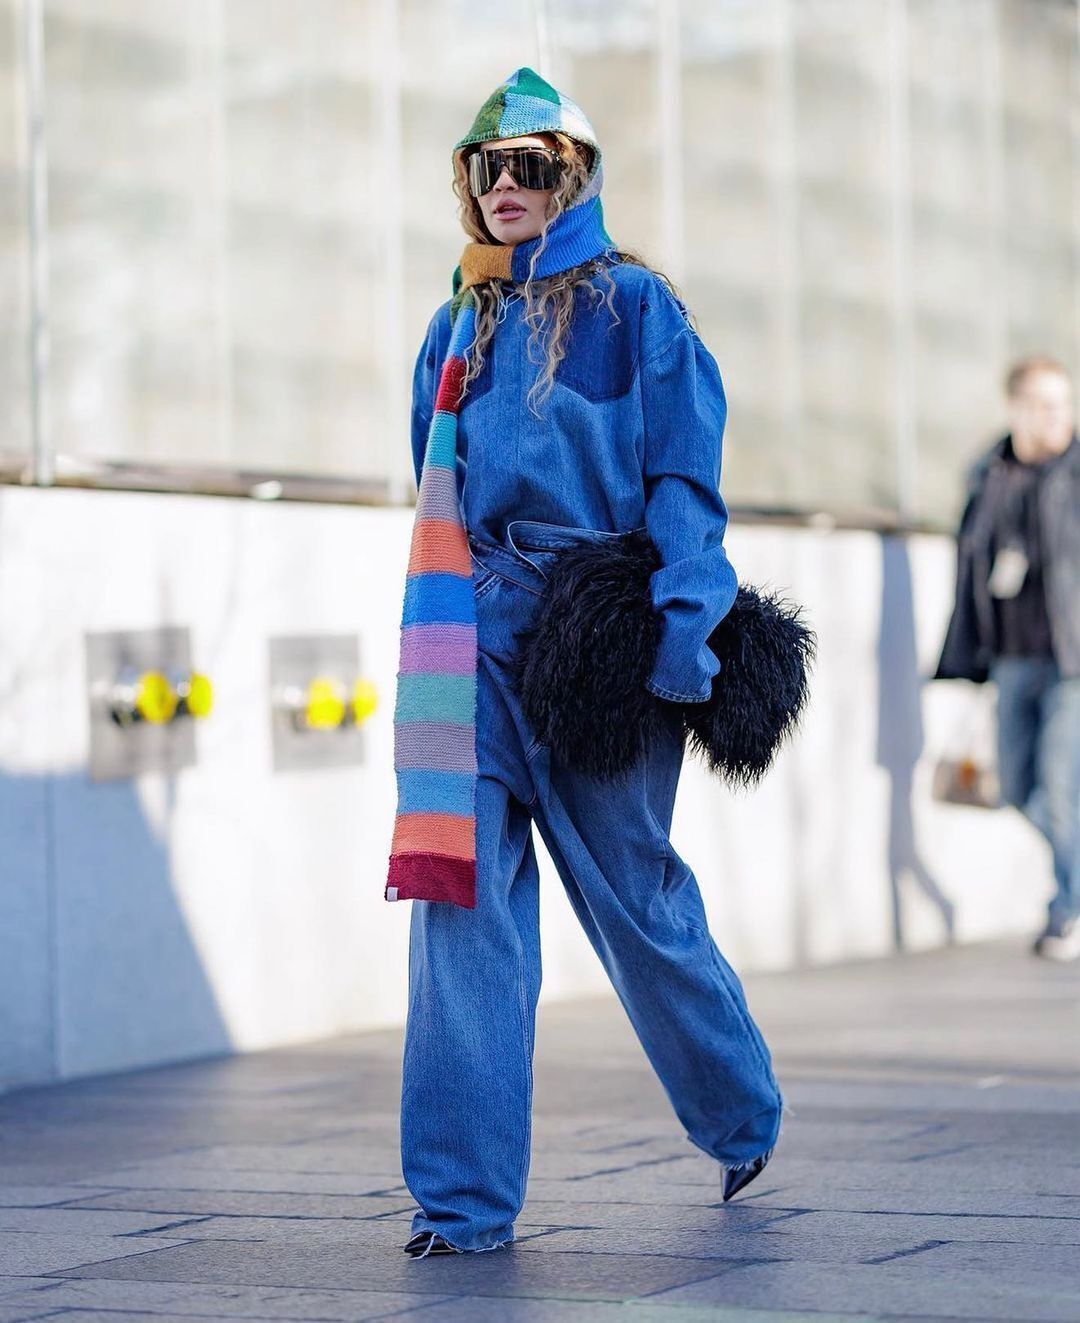 Ріта Ора вигуляла в Нью-Йорку стильний образ від українського бренду. Фото